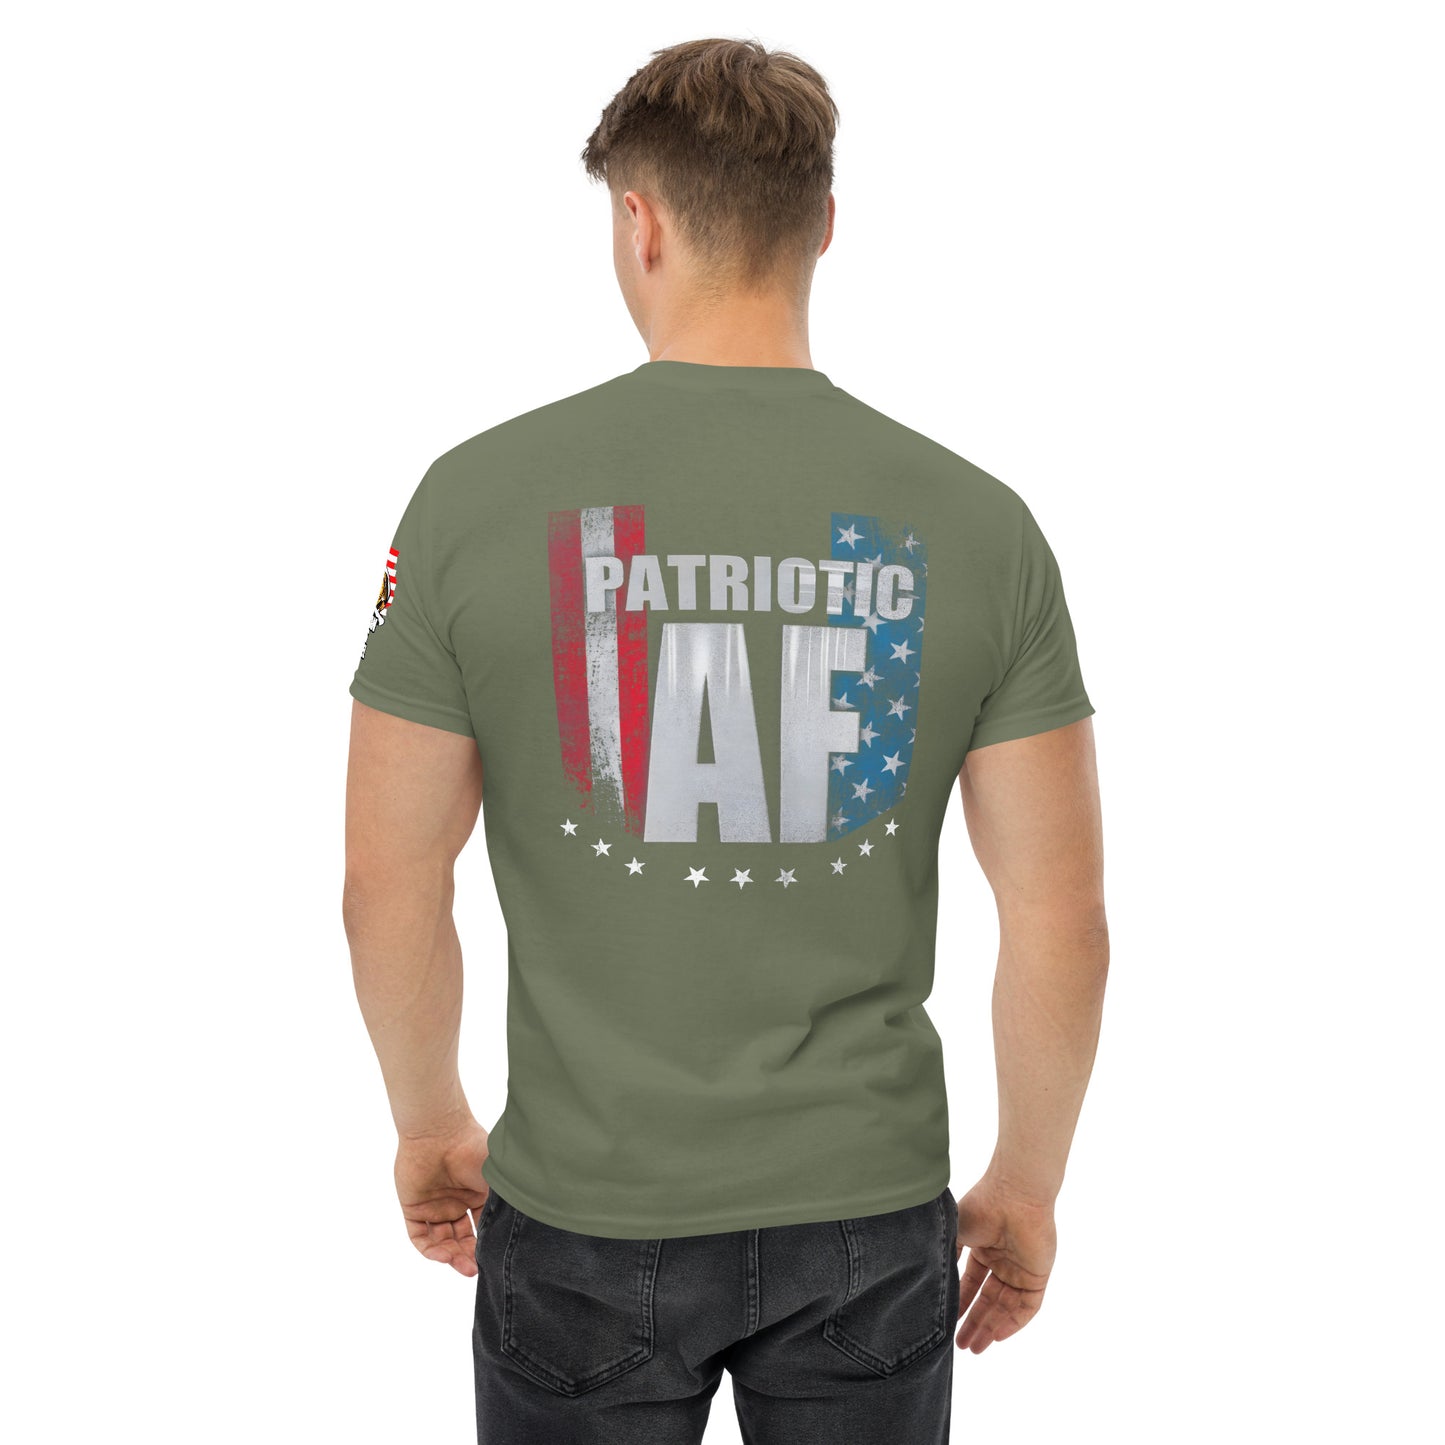 Patriotic A F